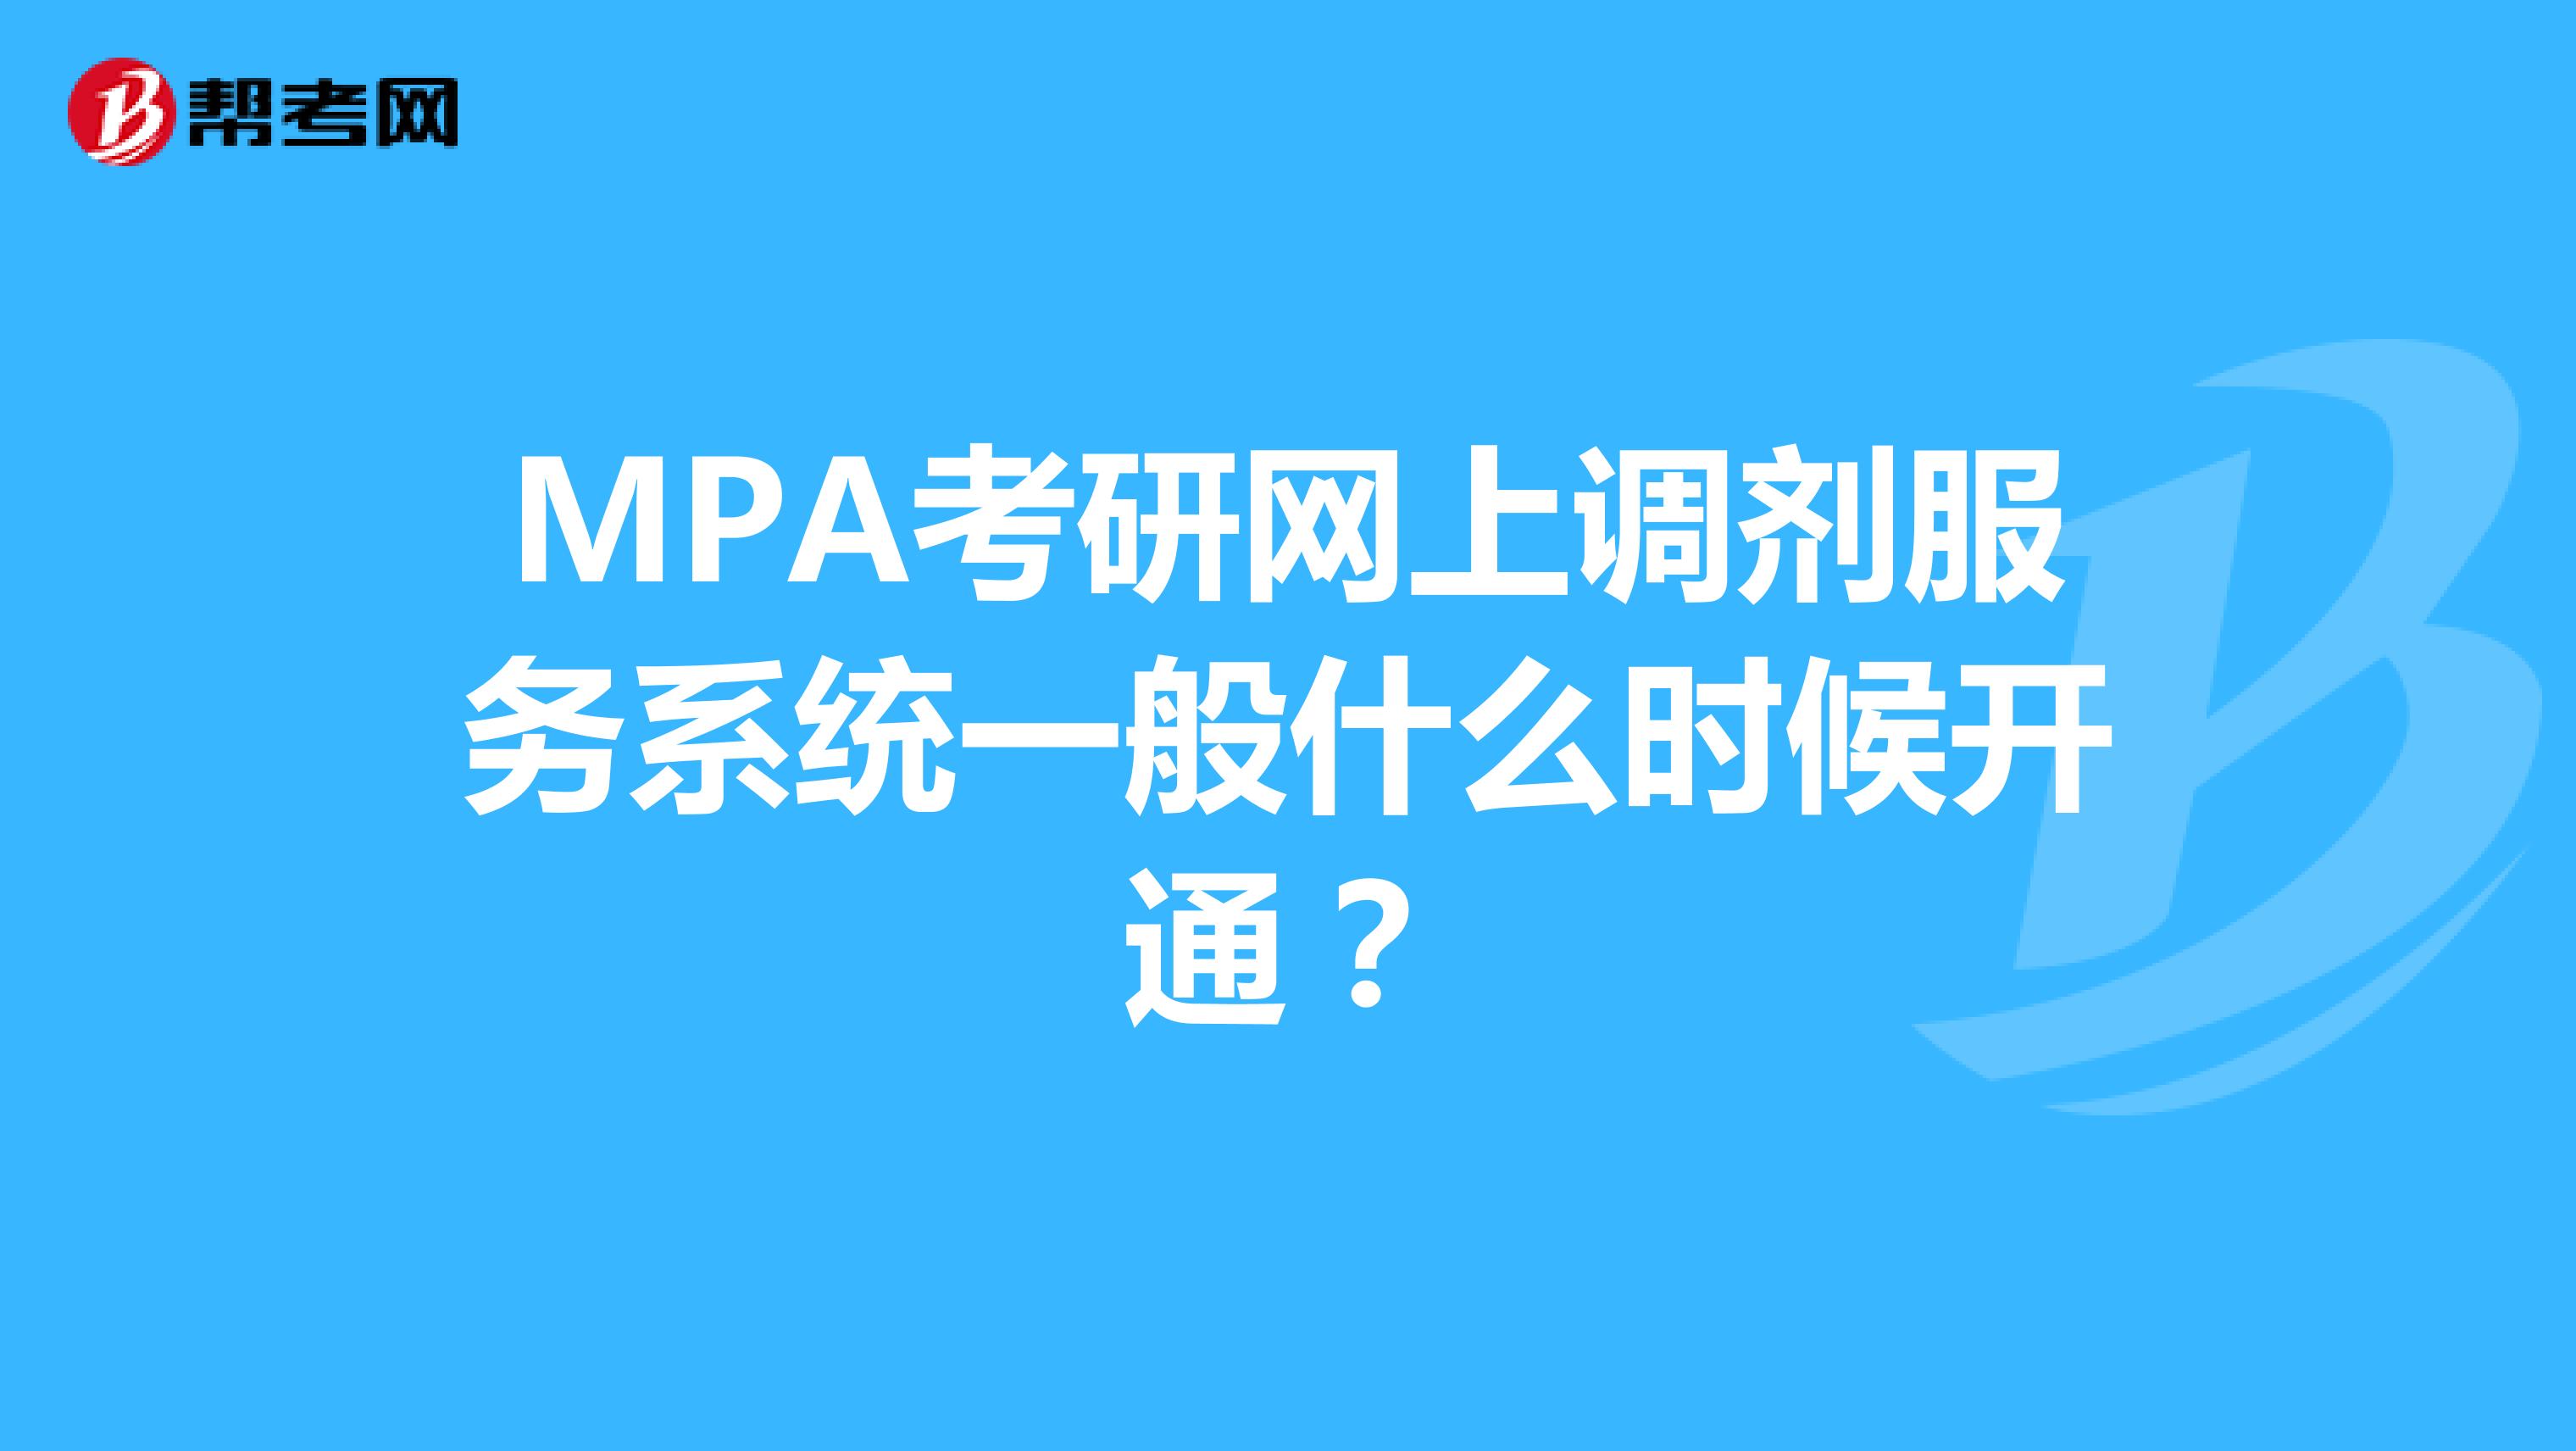 MPA考研网上调剂服务系统一般什么时候开通？